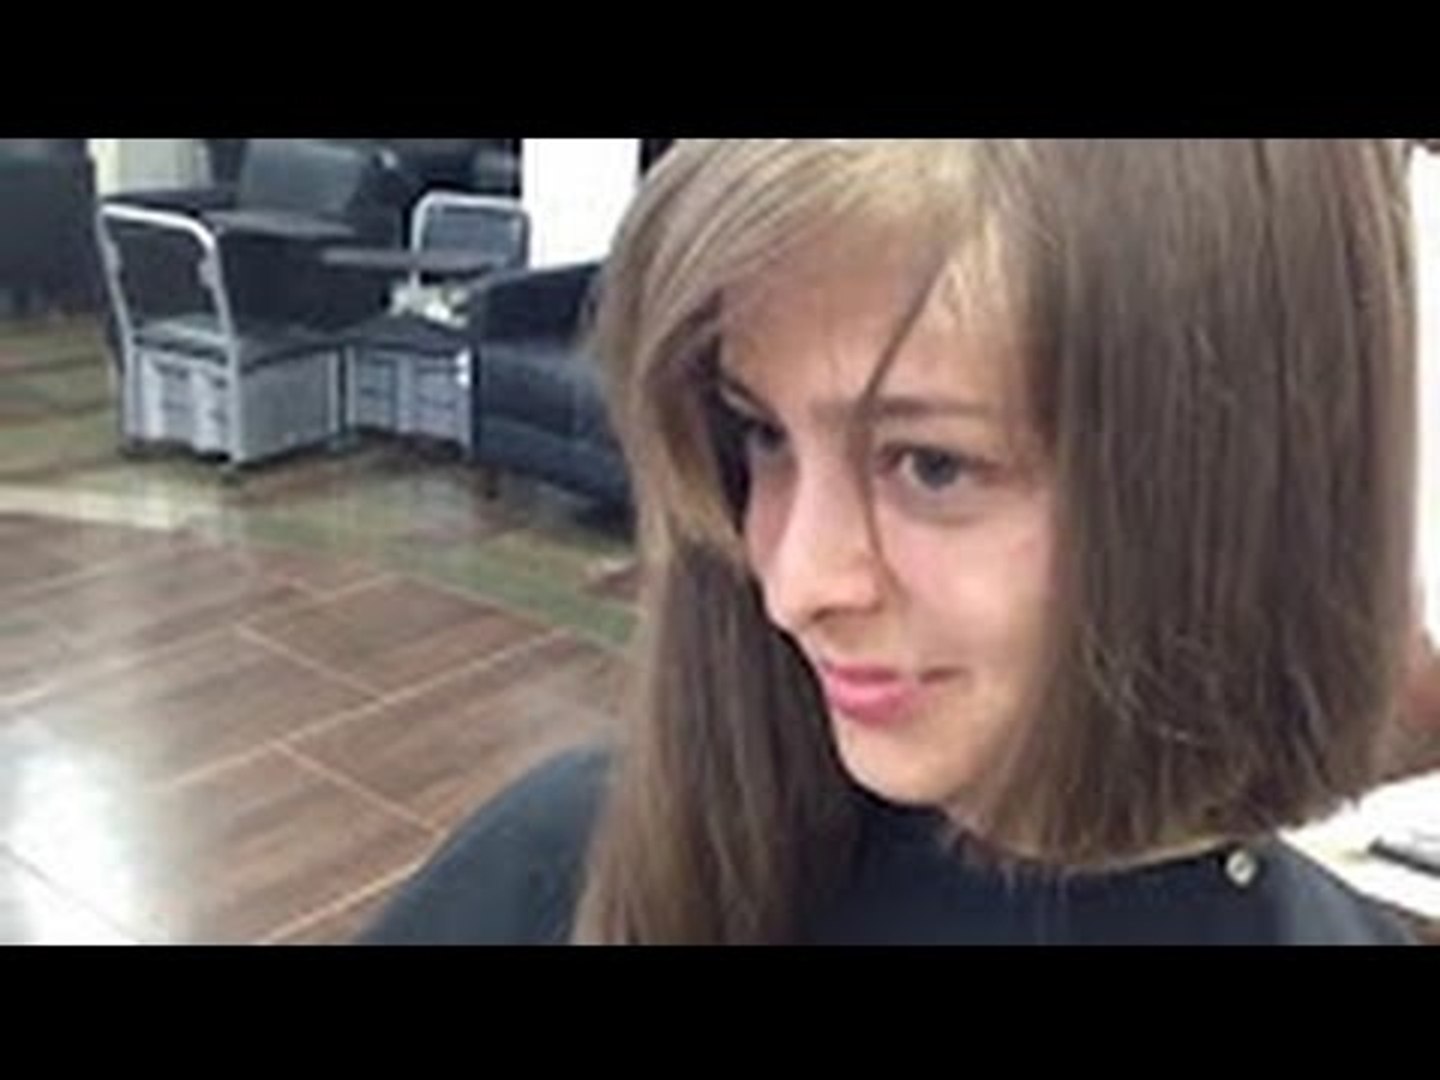 Long hair cut to a short bob haircut - video Dailymotion